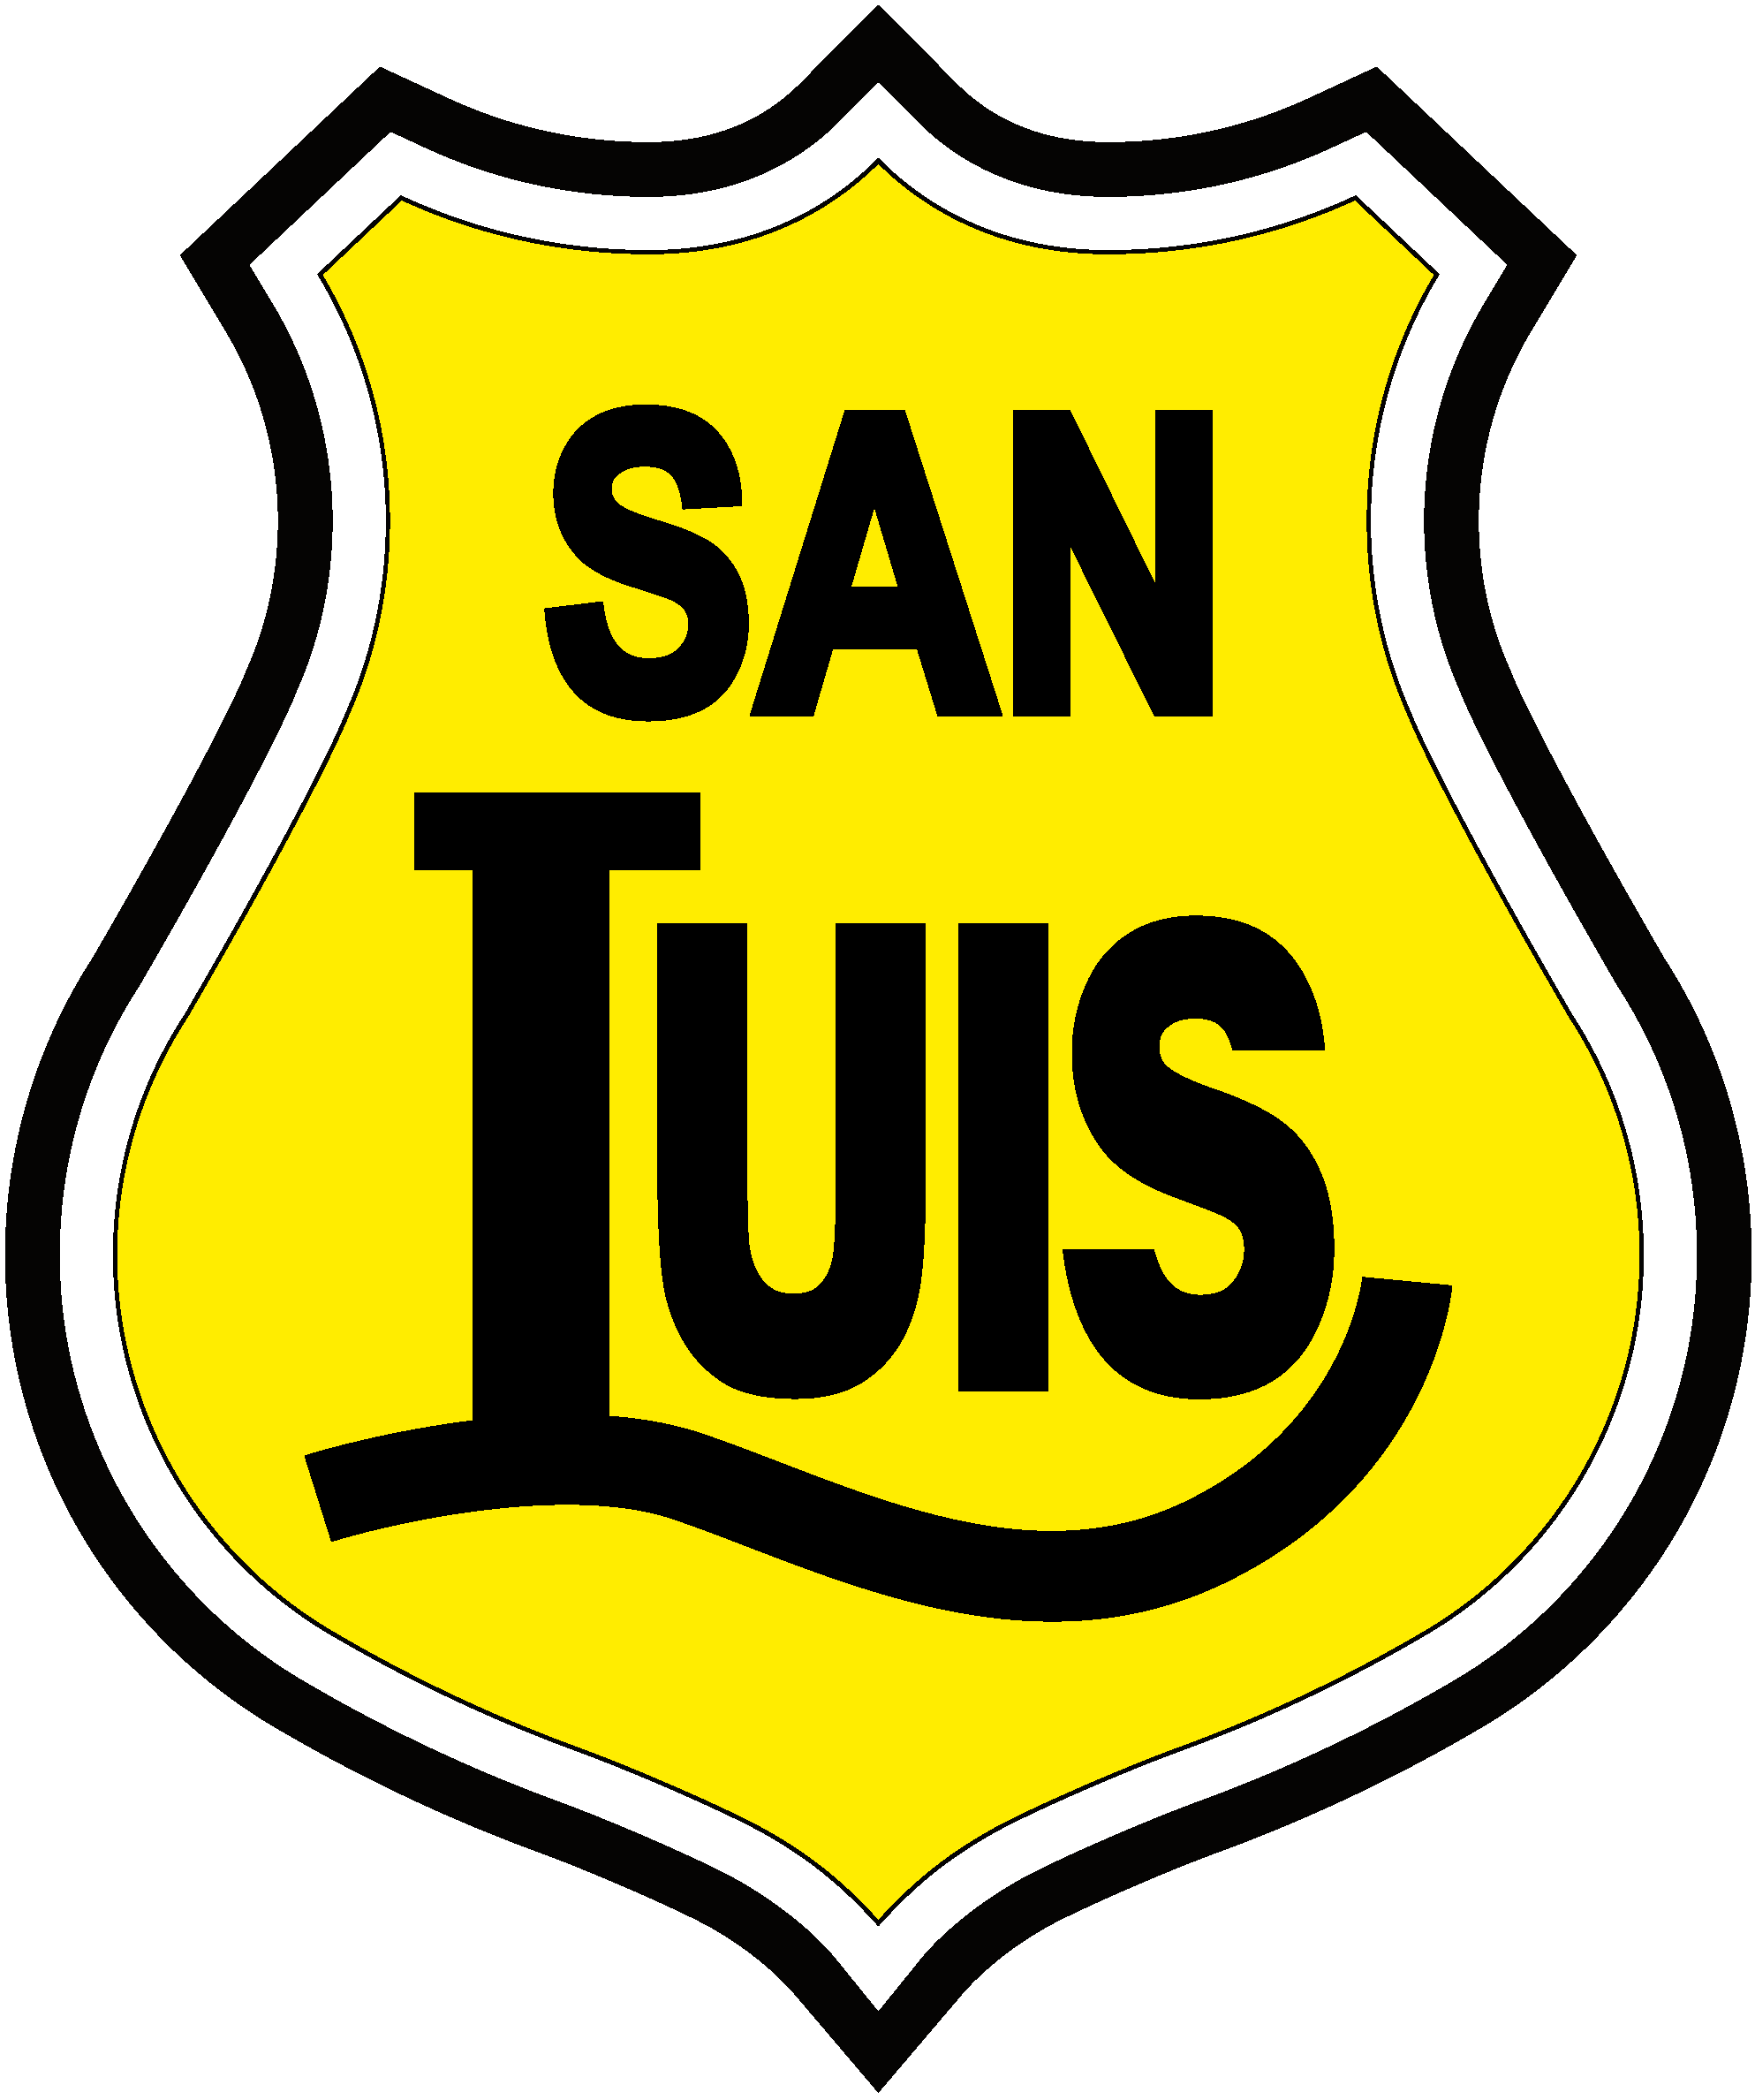 San Luis Quillota